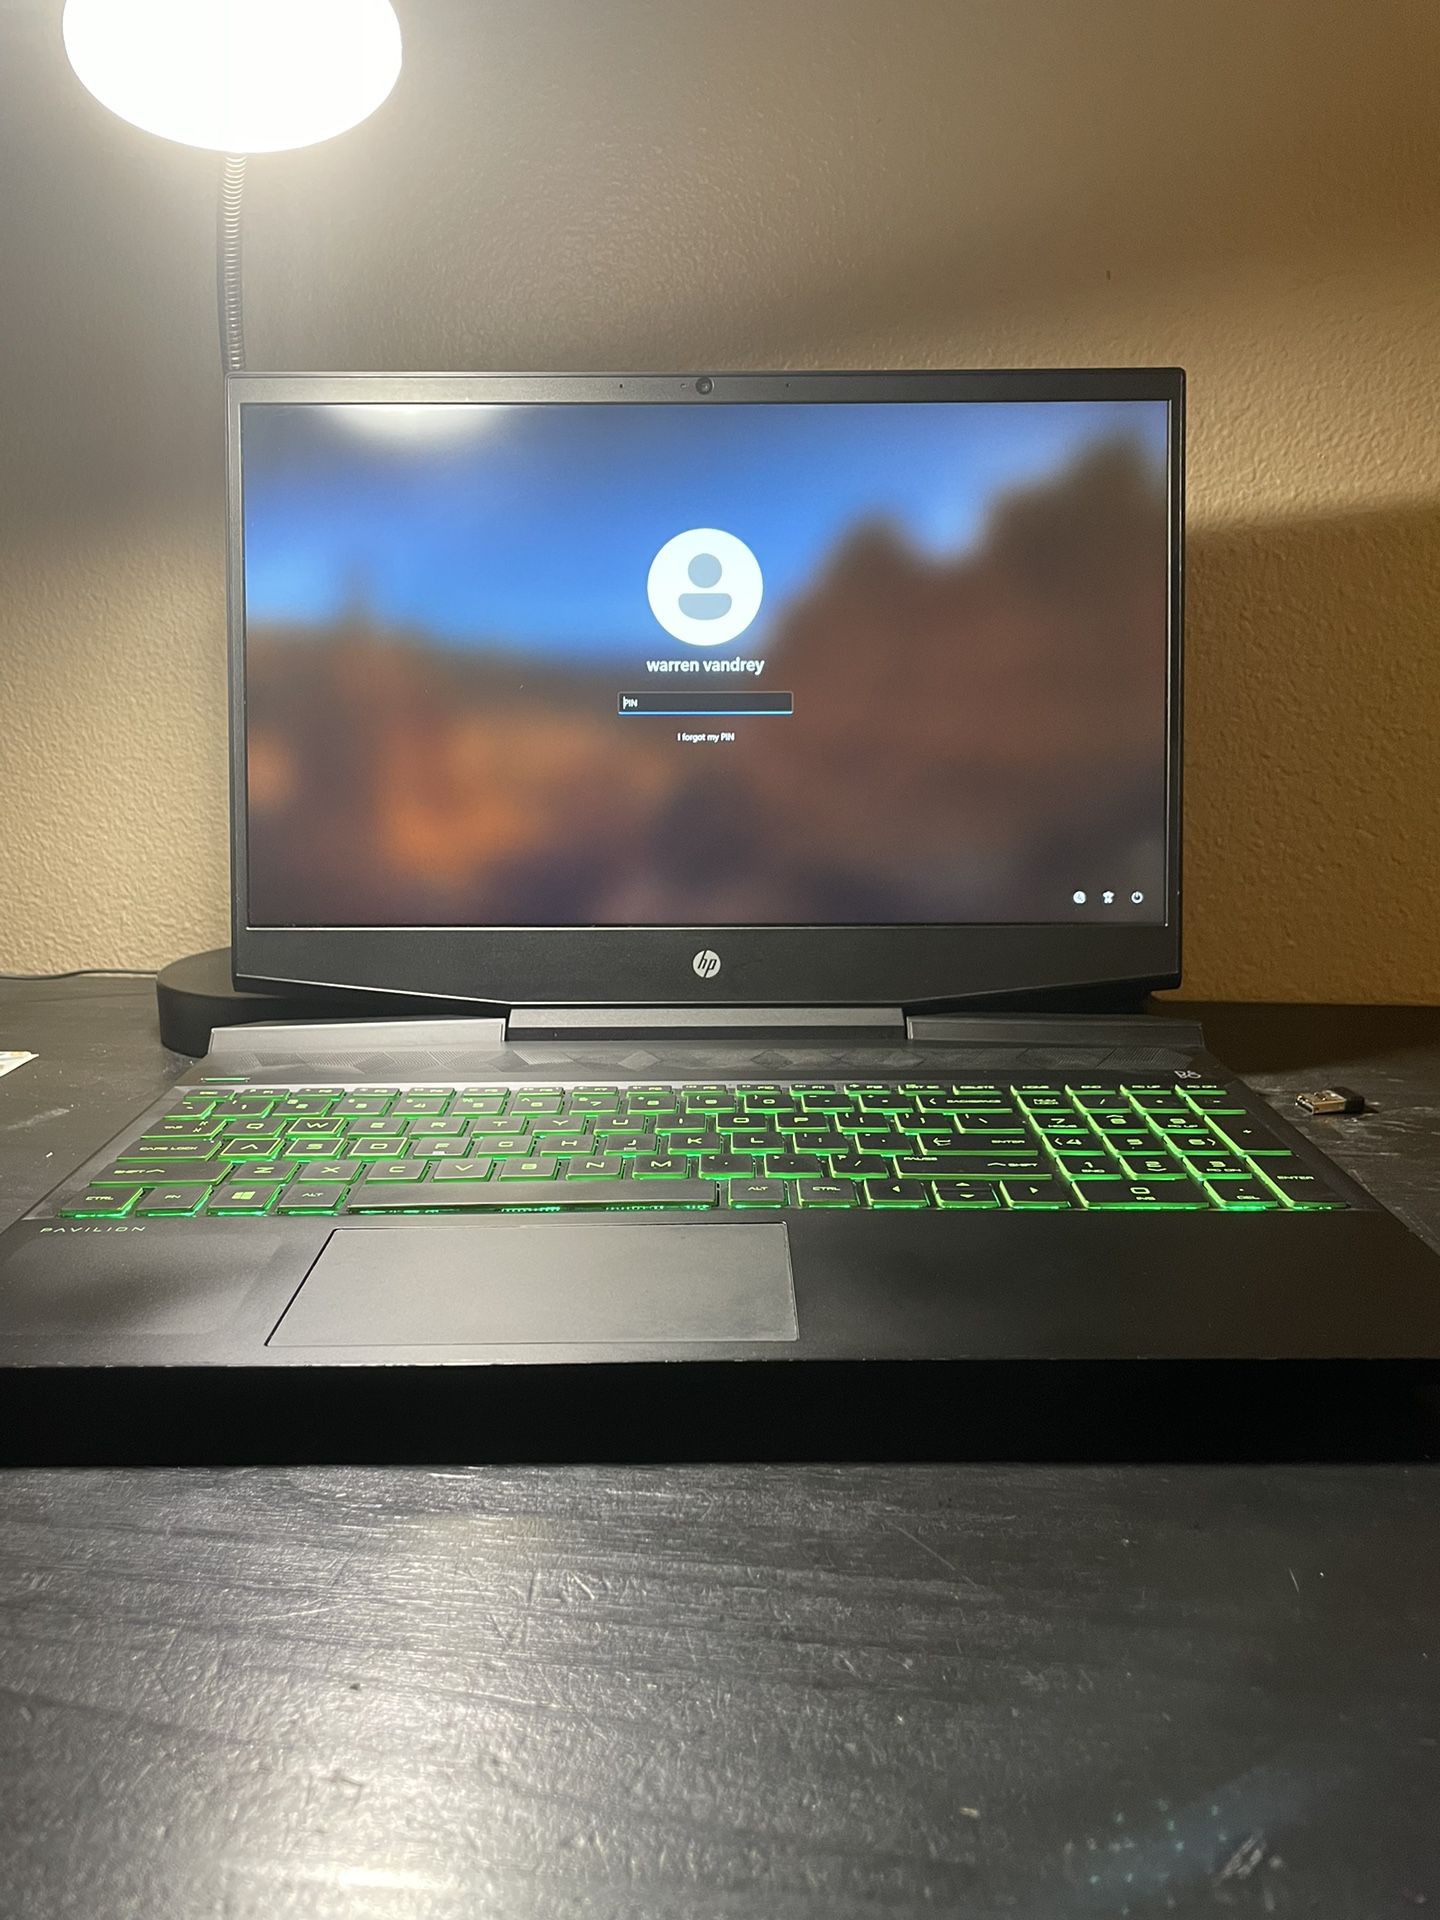 HP Pavilion Gaming Laptop 15-dk1xx 13.5 Inch